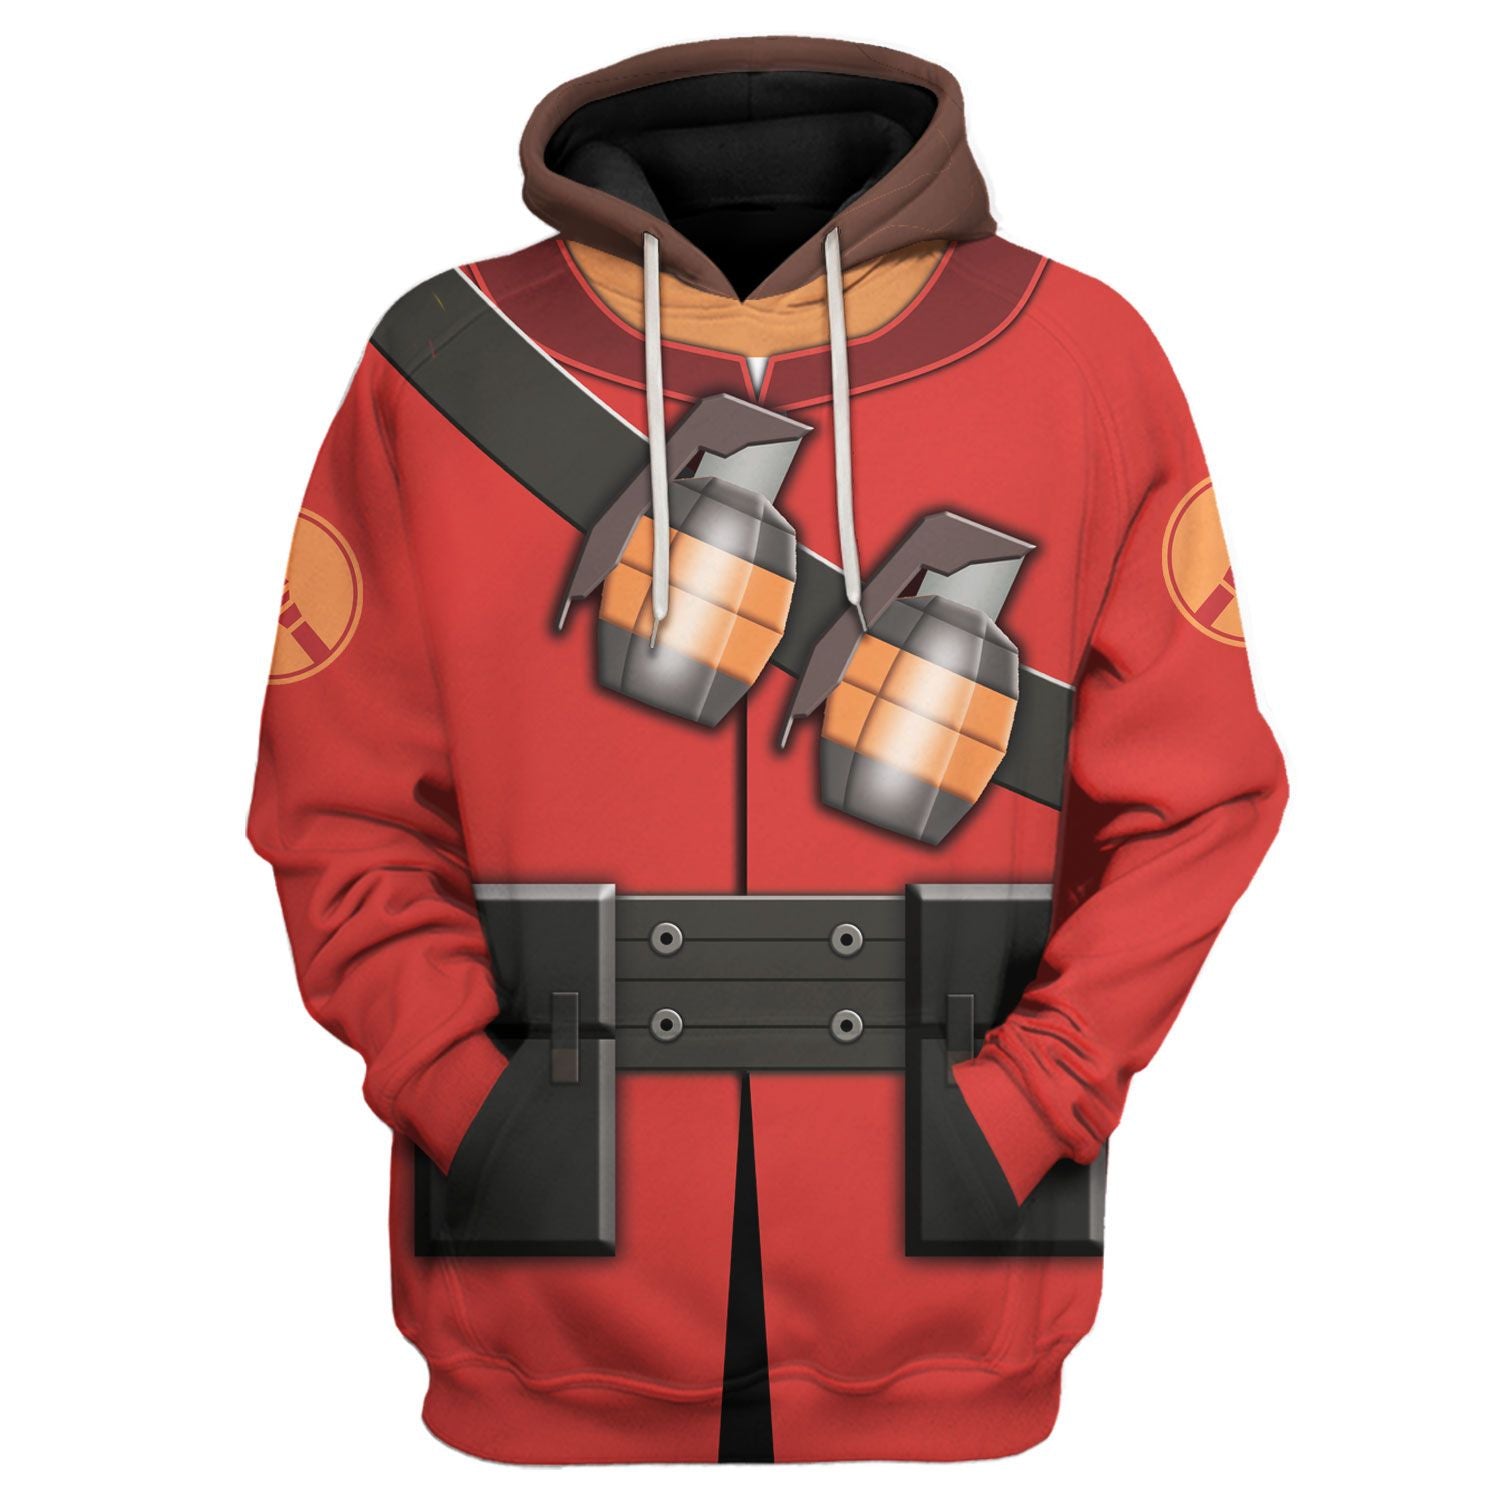 Soldier TF2 hoodie